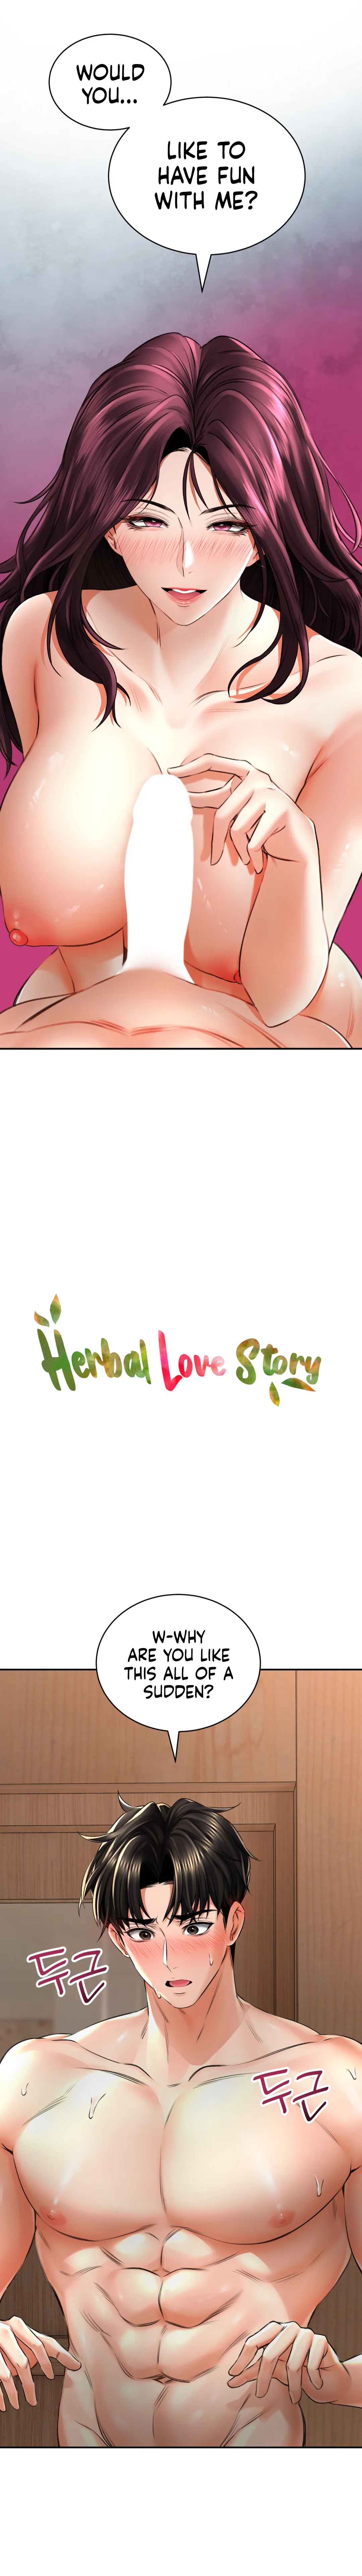 Read manhwa Herbal Love Story Chapter 8 - SauceManhwa.com